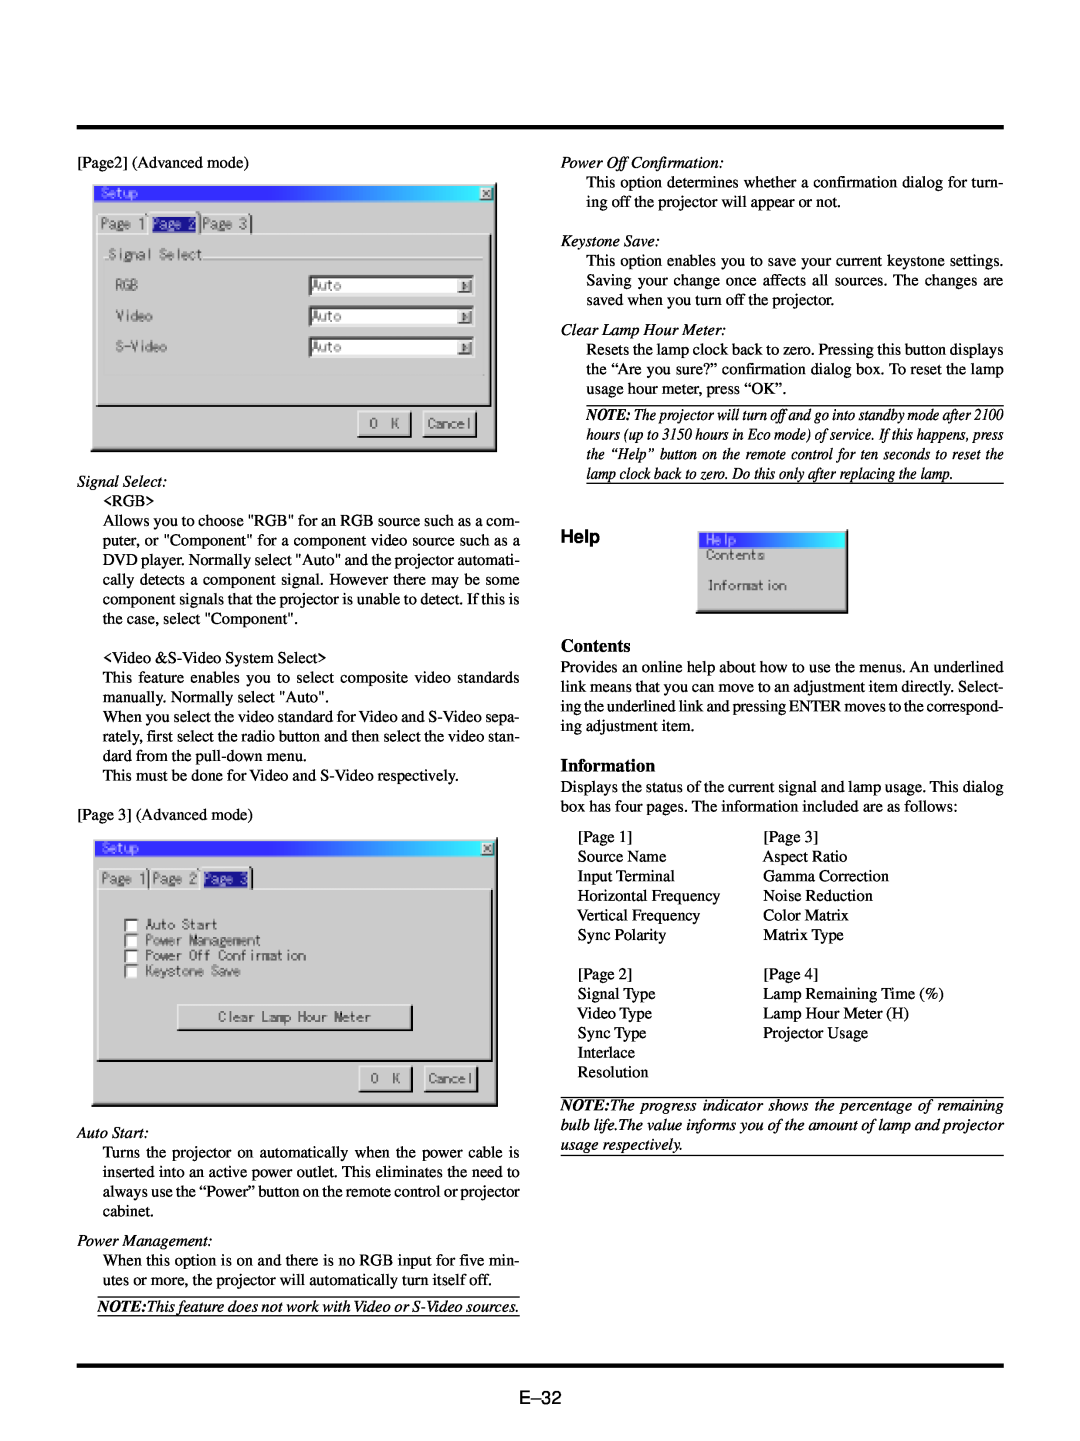 NEC VT440, VT540 user manual Help, Contents, Information 